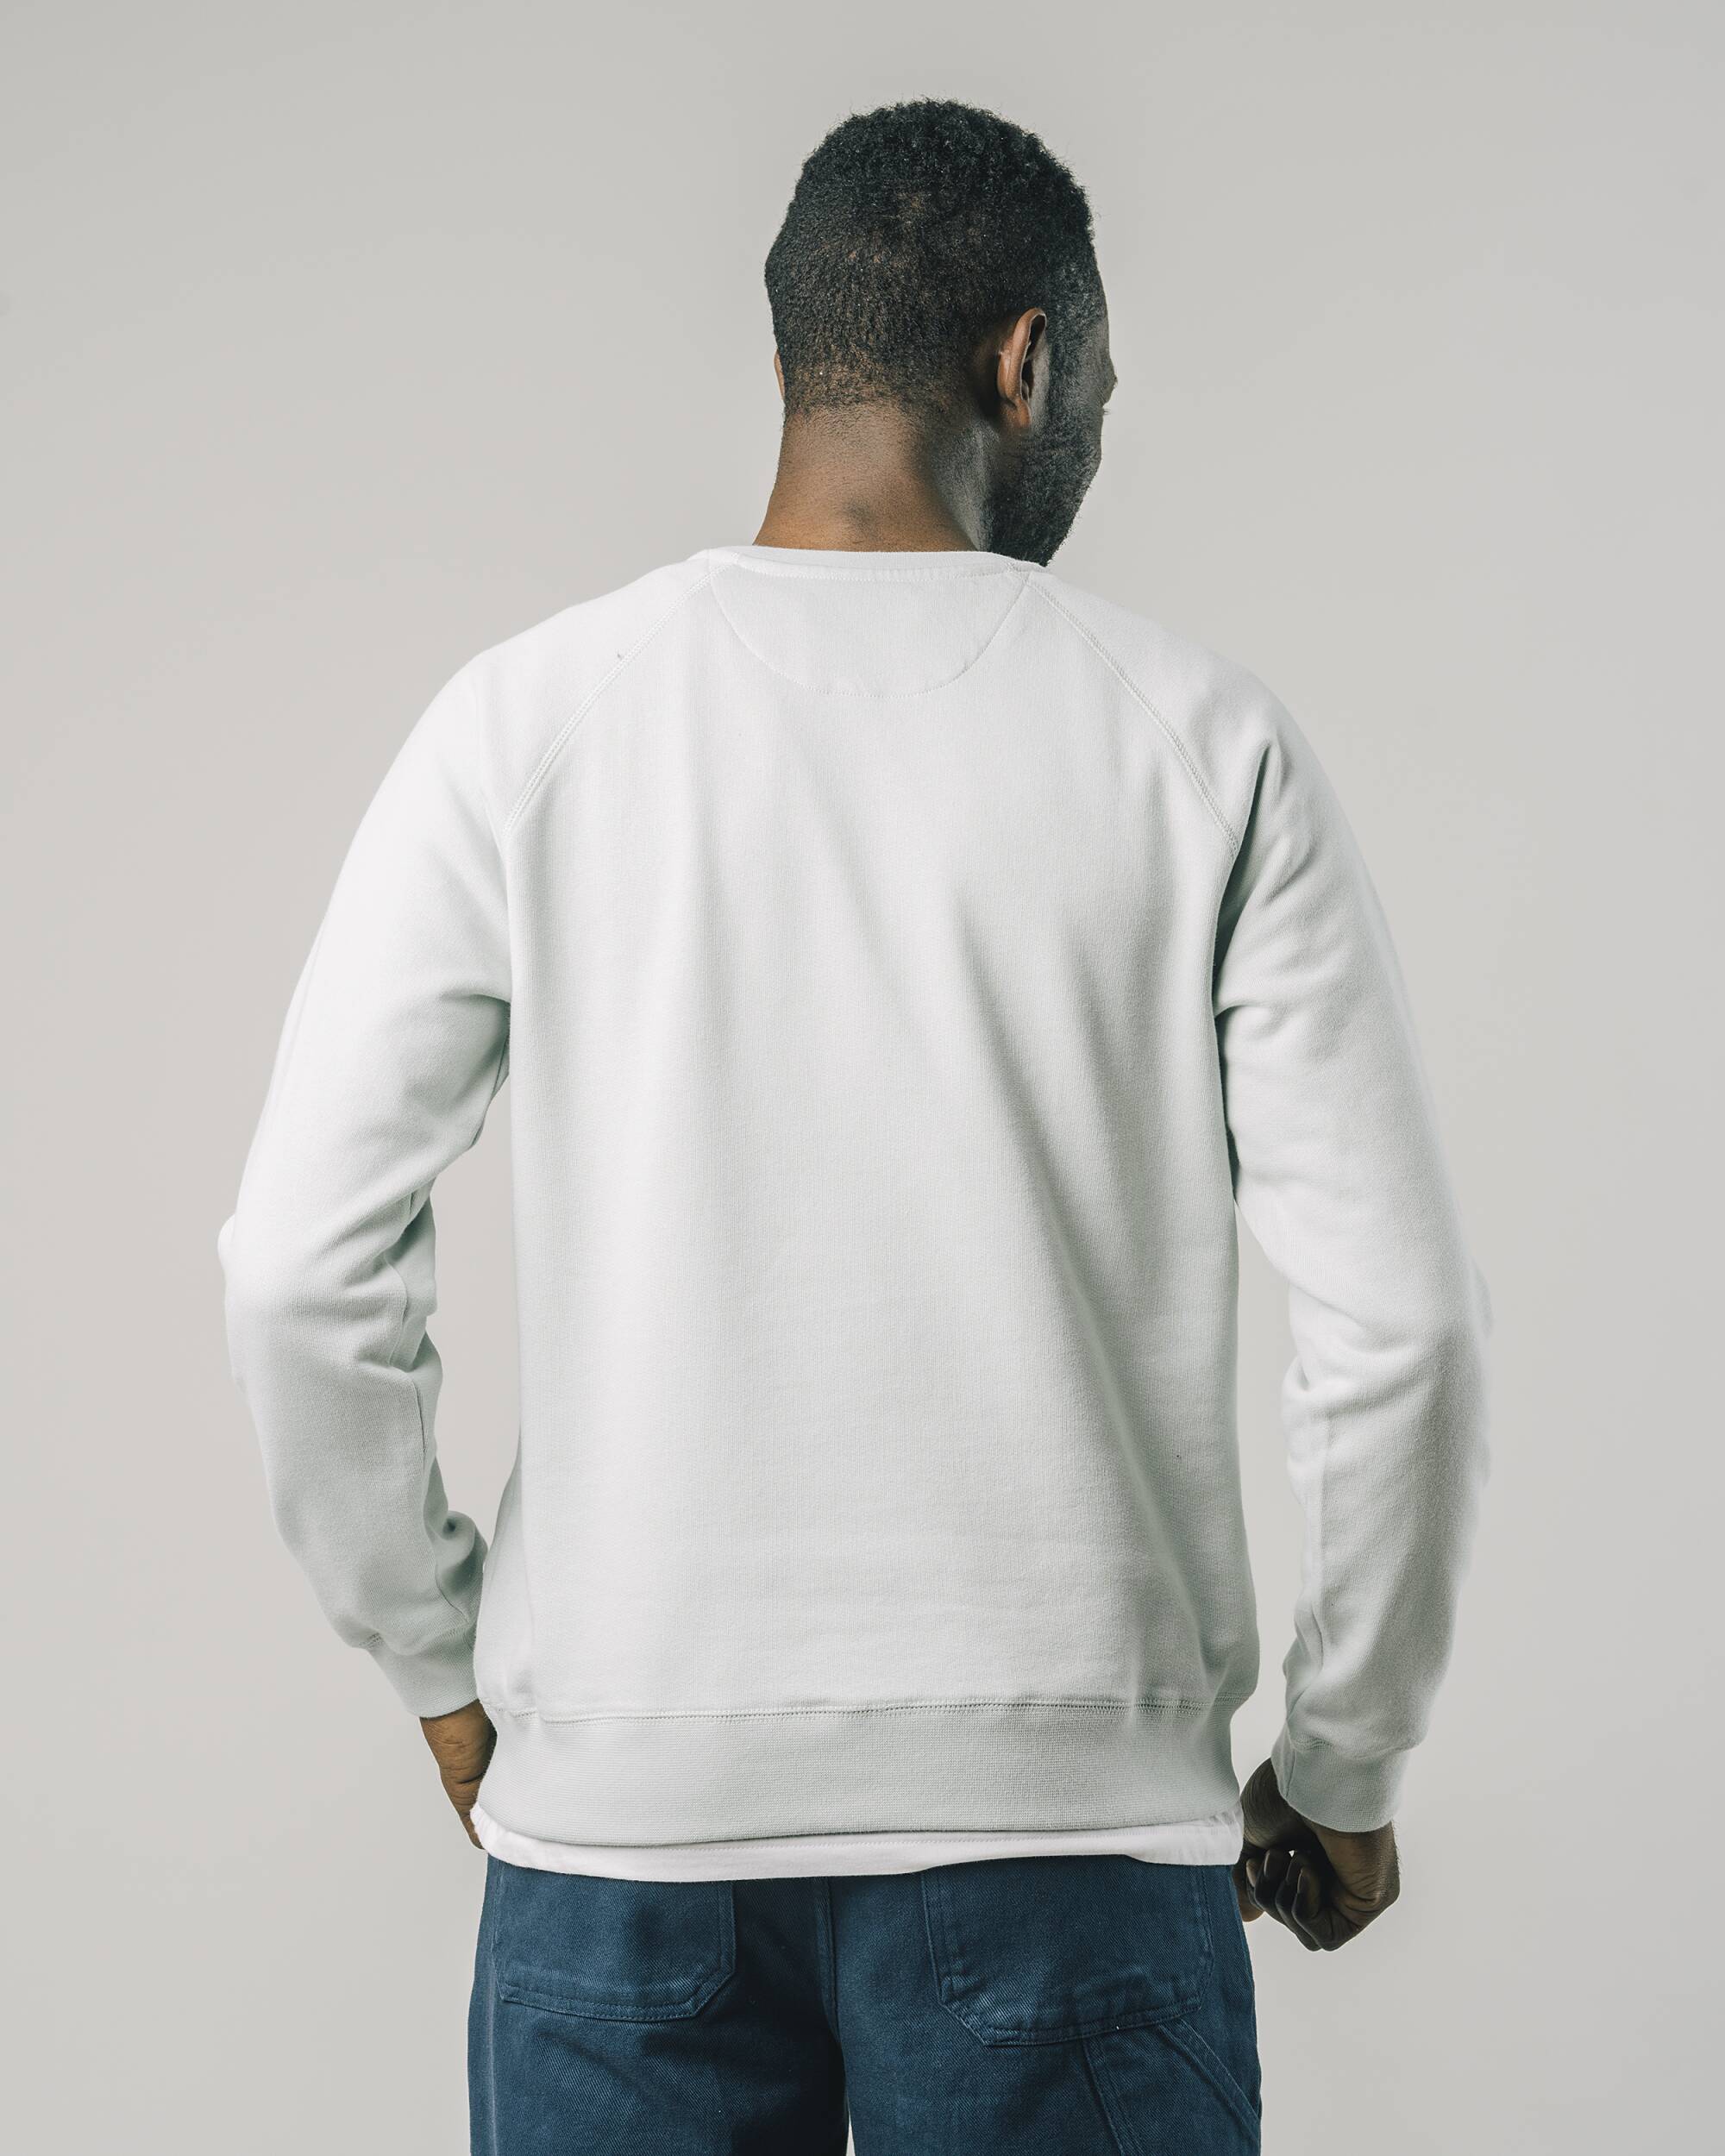 Sweatshirt "Gobi" in white made from 100% organic cotton from Brava Fabrics